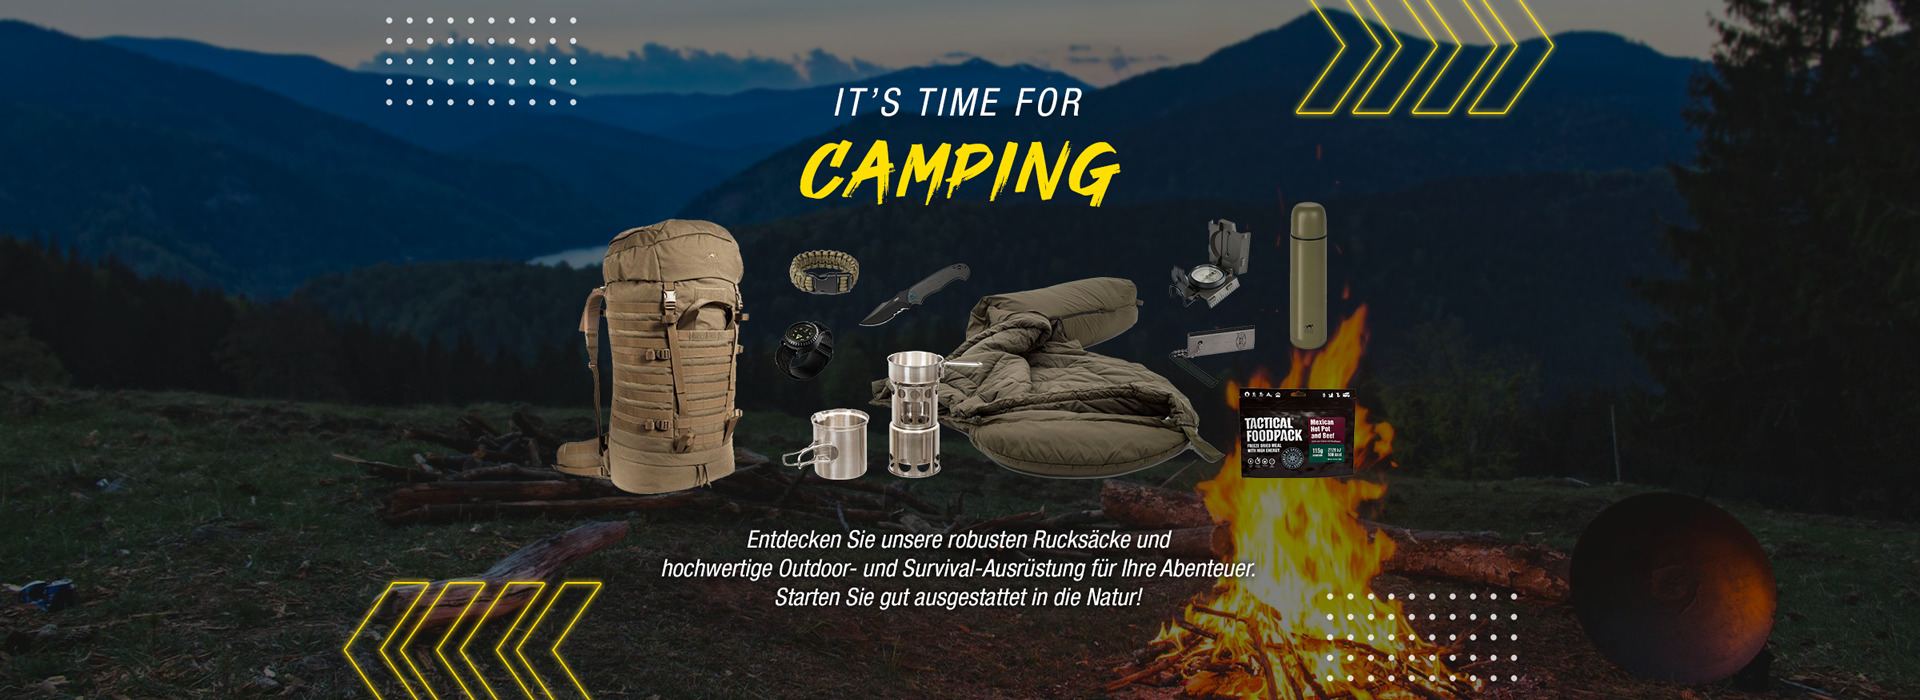 Die Camping-Saison startet! - Entdecken Sie unsere robusten Rucksäcke und hochwertige Outdoor- und Survival-Ausrüstung für Ihre Abenteuer